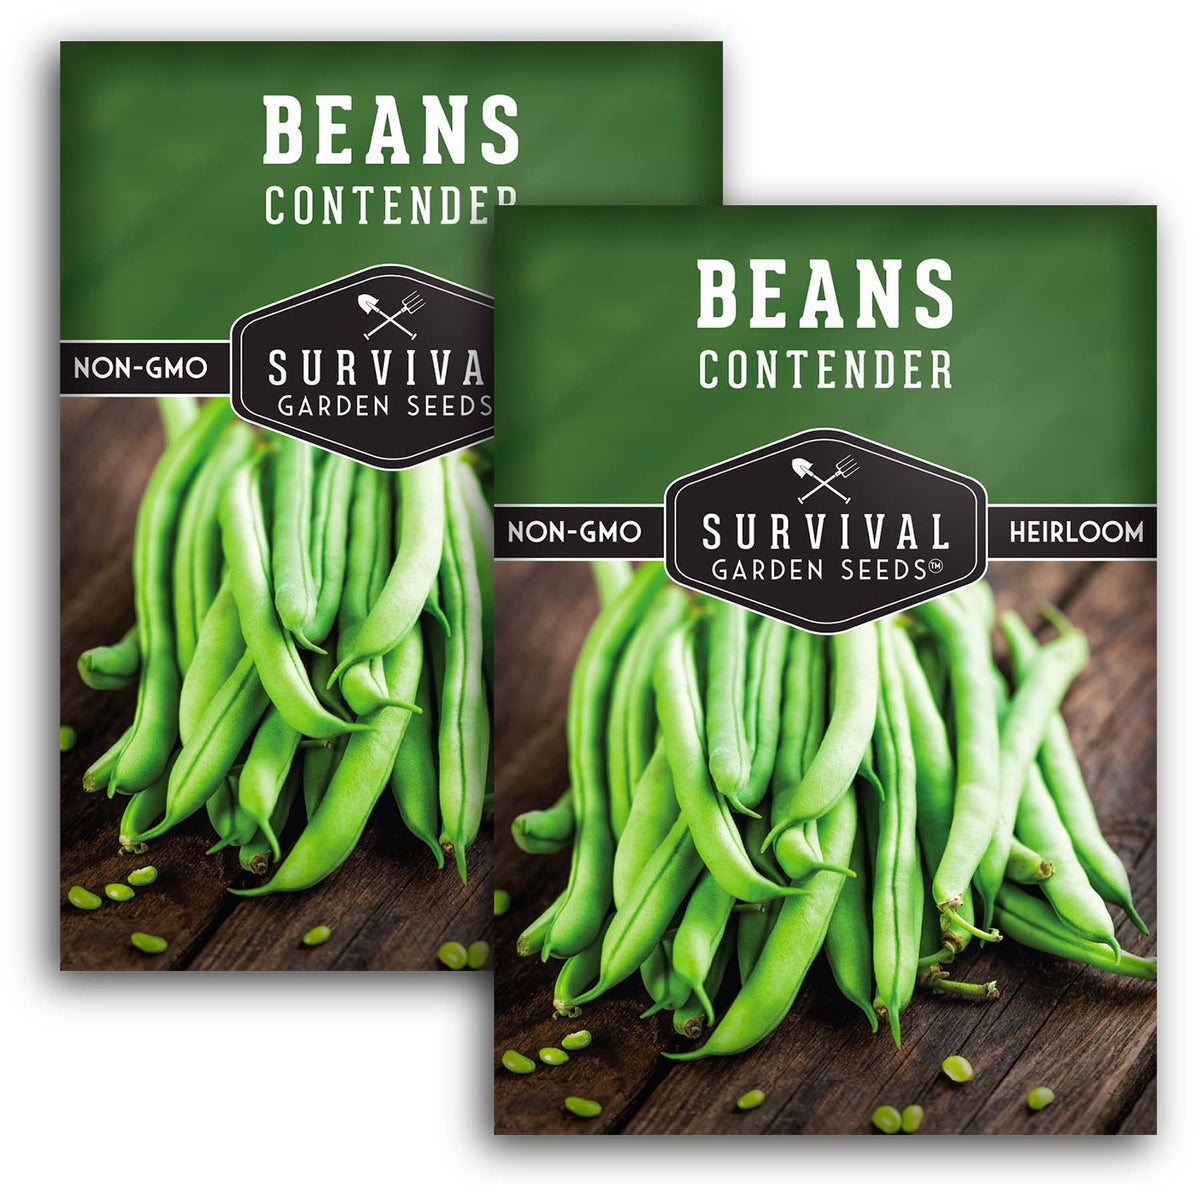 Contender Bush Bean Seeds